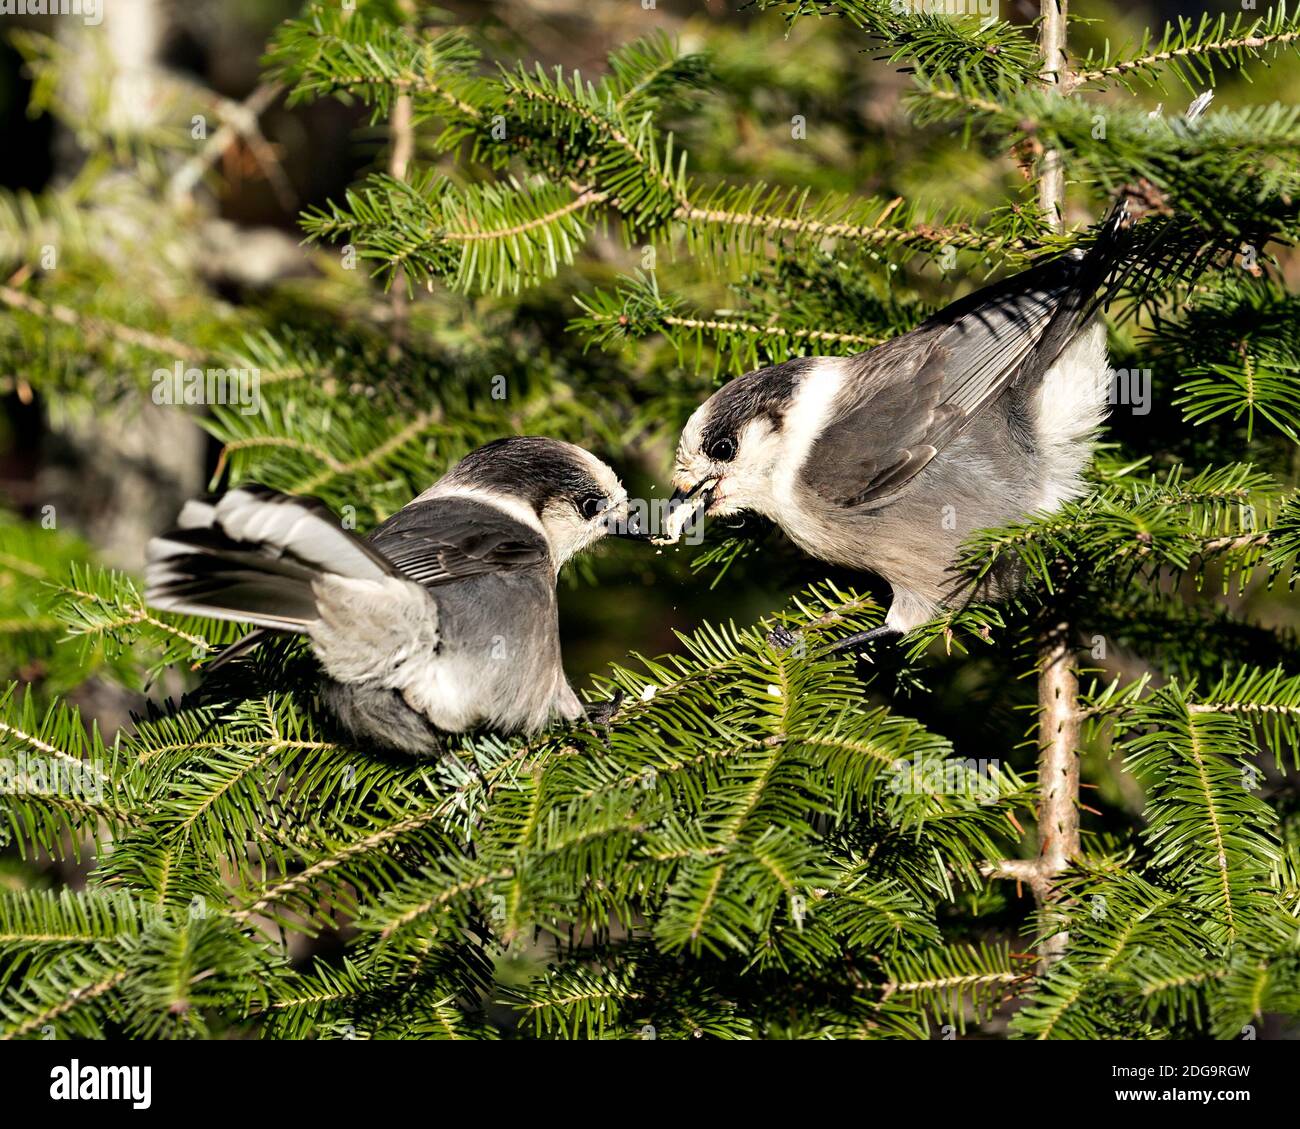 Vista ravvicinata della coppia Gray Jay appollaiata su un ramo di abeti nel loro ambiente e habitat, condividendo il cibo. Foto Stock